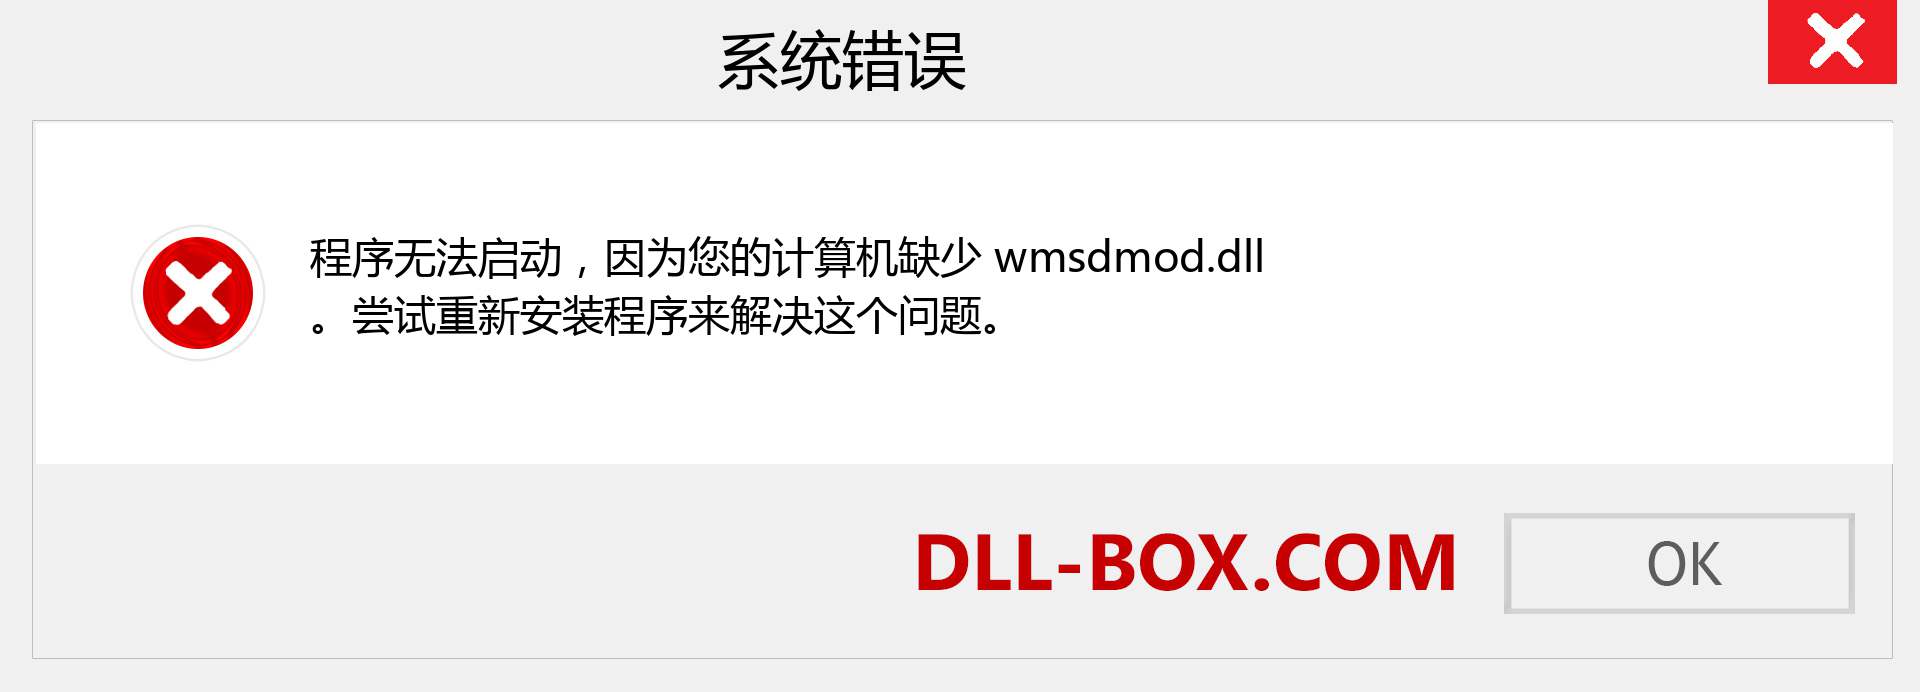 wmsdmod.dll 文件丢失？。 适用于 Windows 7、8、10 的下载 - 修复 Windows、照片、图像上的 wmsdmod dll 丢失错误